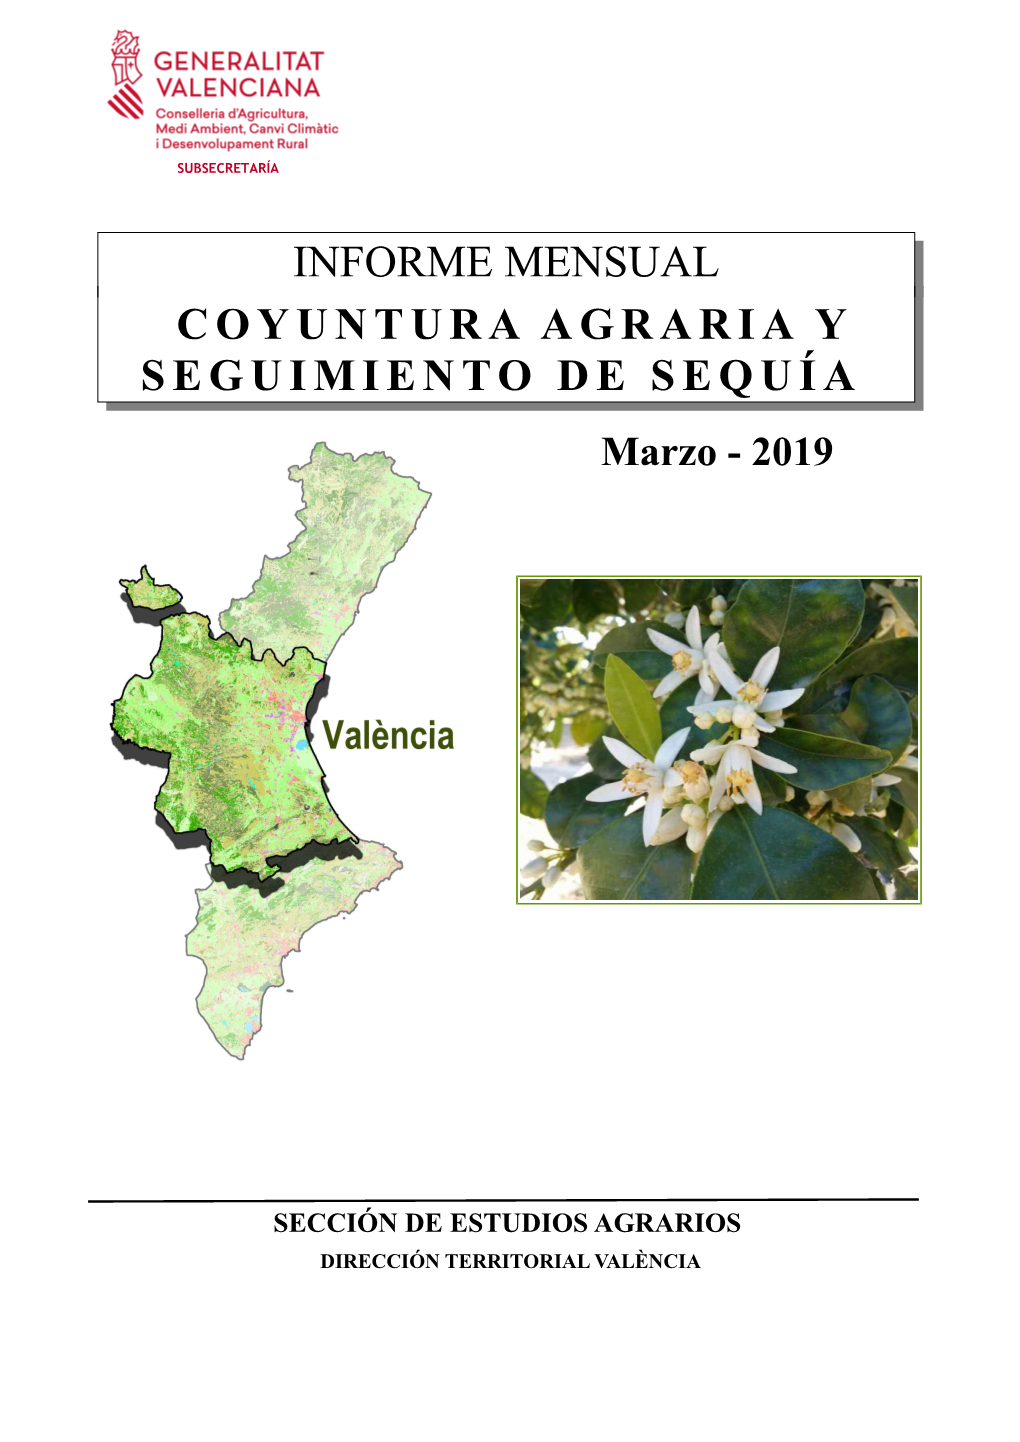 INFORME MENSUAL COYUNTURA AGRARIA Y SEGUIMIENTO DE SEQUÍA Marzo - 2019